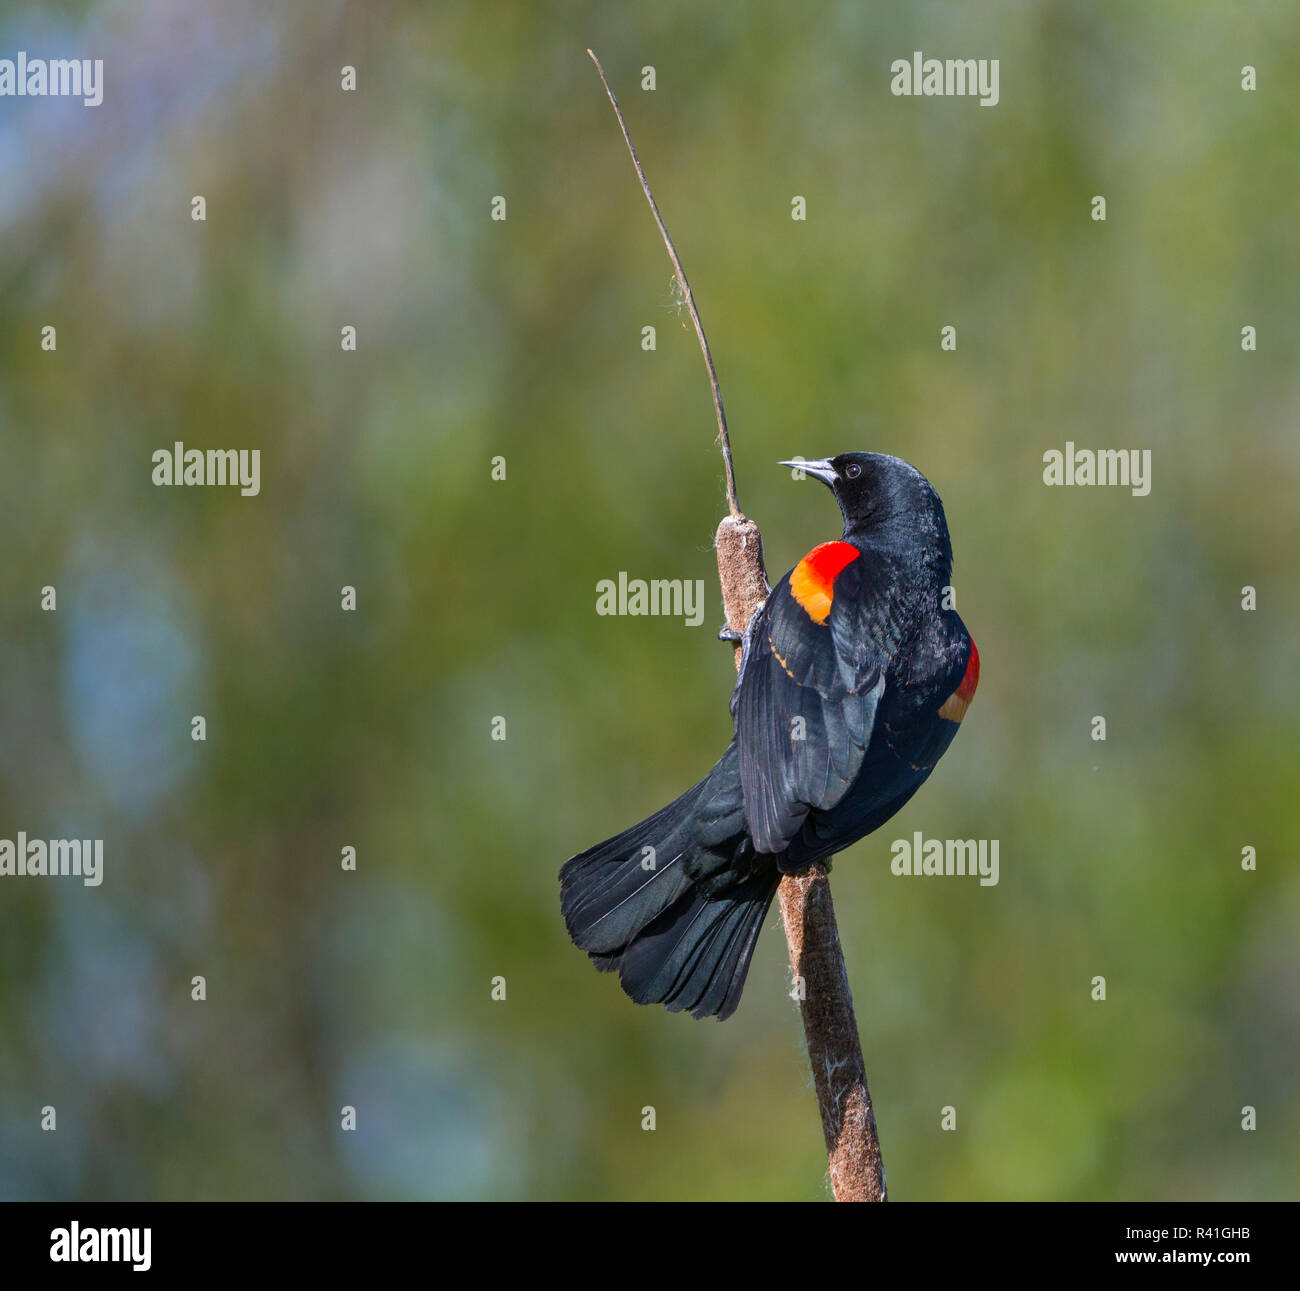 USA, Washington State. Männlich Red-winged blackbird (Agelaius phoeniceus) Anzeige von roten Epauletten auf einem cattail Barsch in Schafgarbe Bay am Lake Washington. Stockfoto